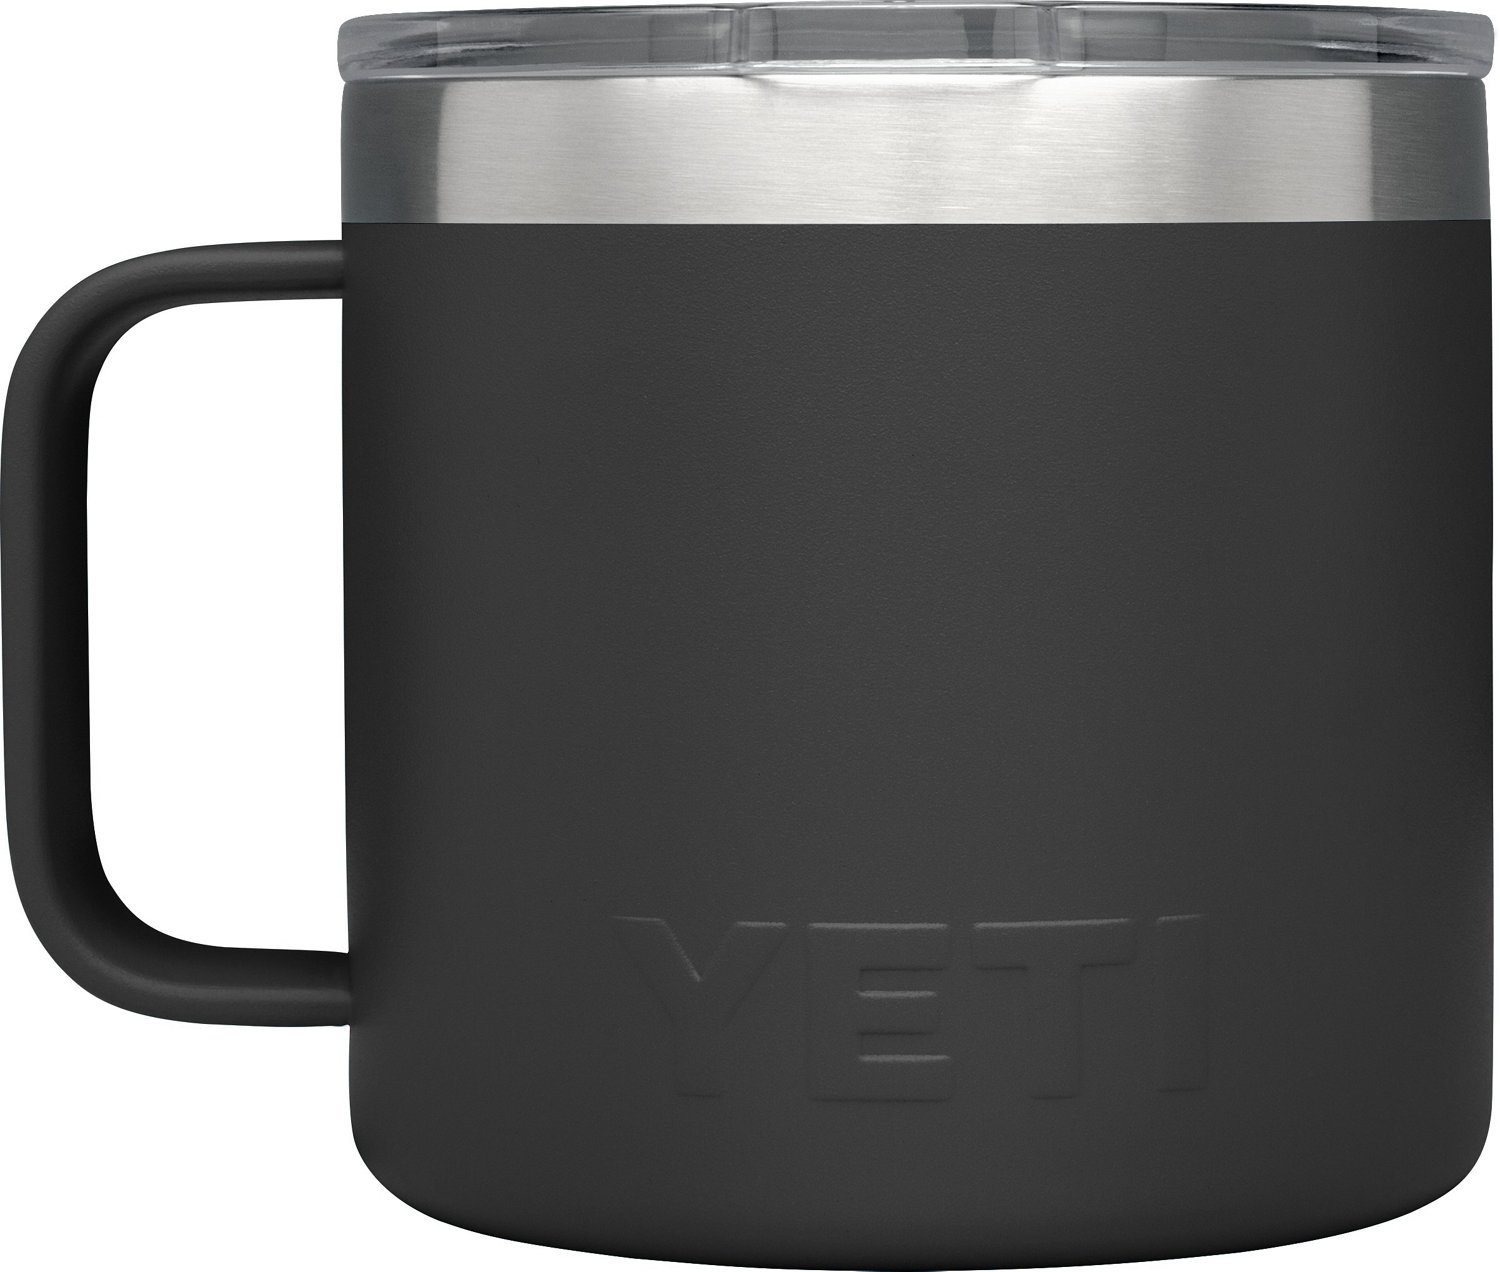 YETI Rambler 10-oz. Stackable Mug with MagSlider Lid